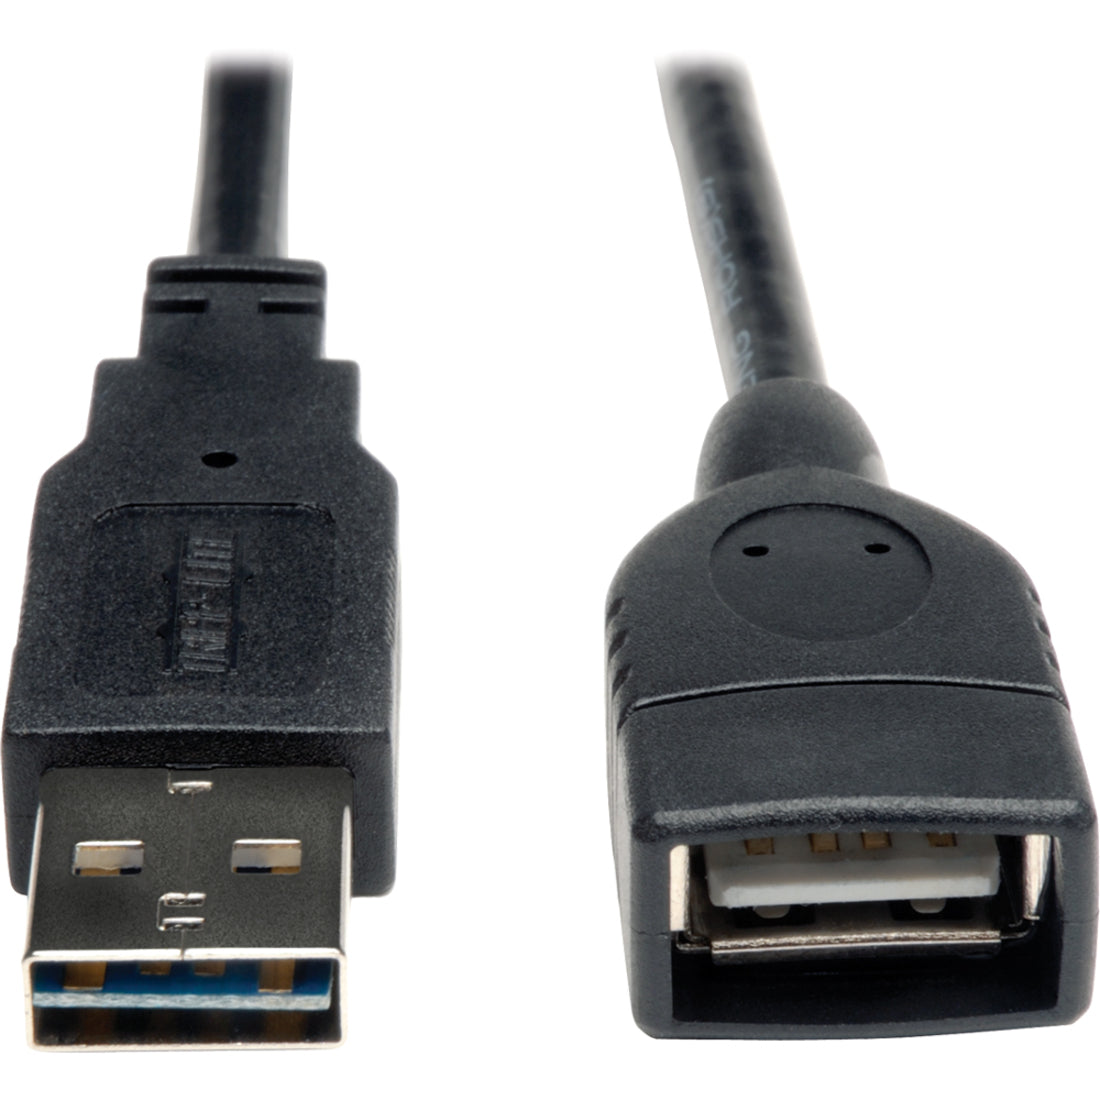 Tripp Lite cables de extensión de USB 2.0 A-Macho a A-Hembra Universal Reversible 1ft moldeado blindado bañado en oro